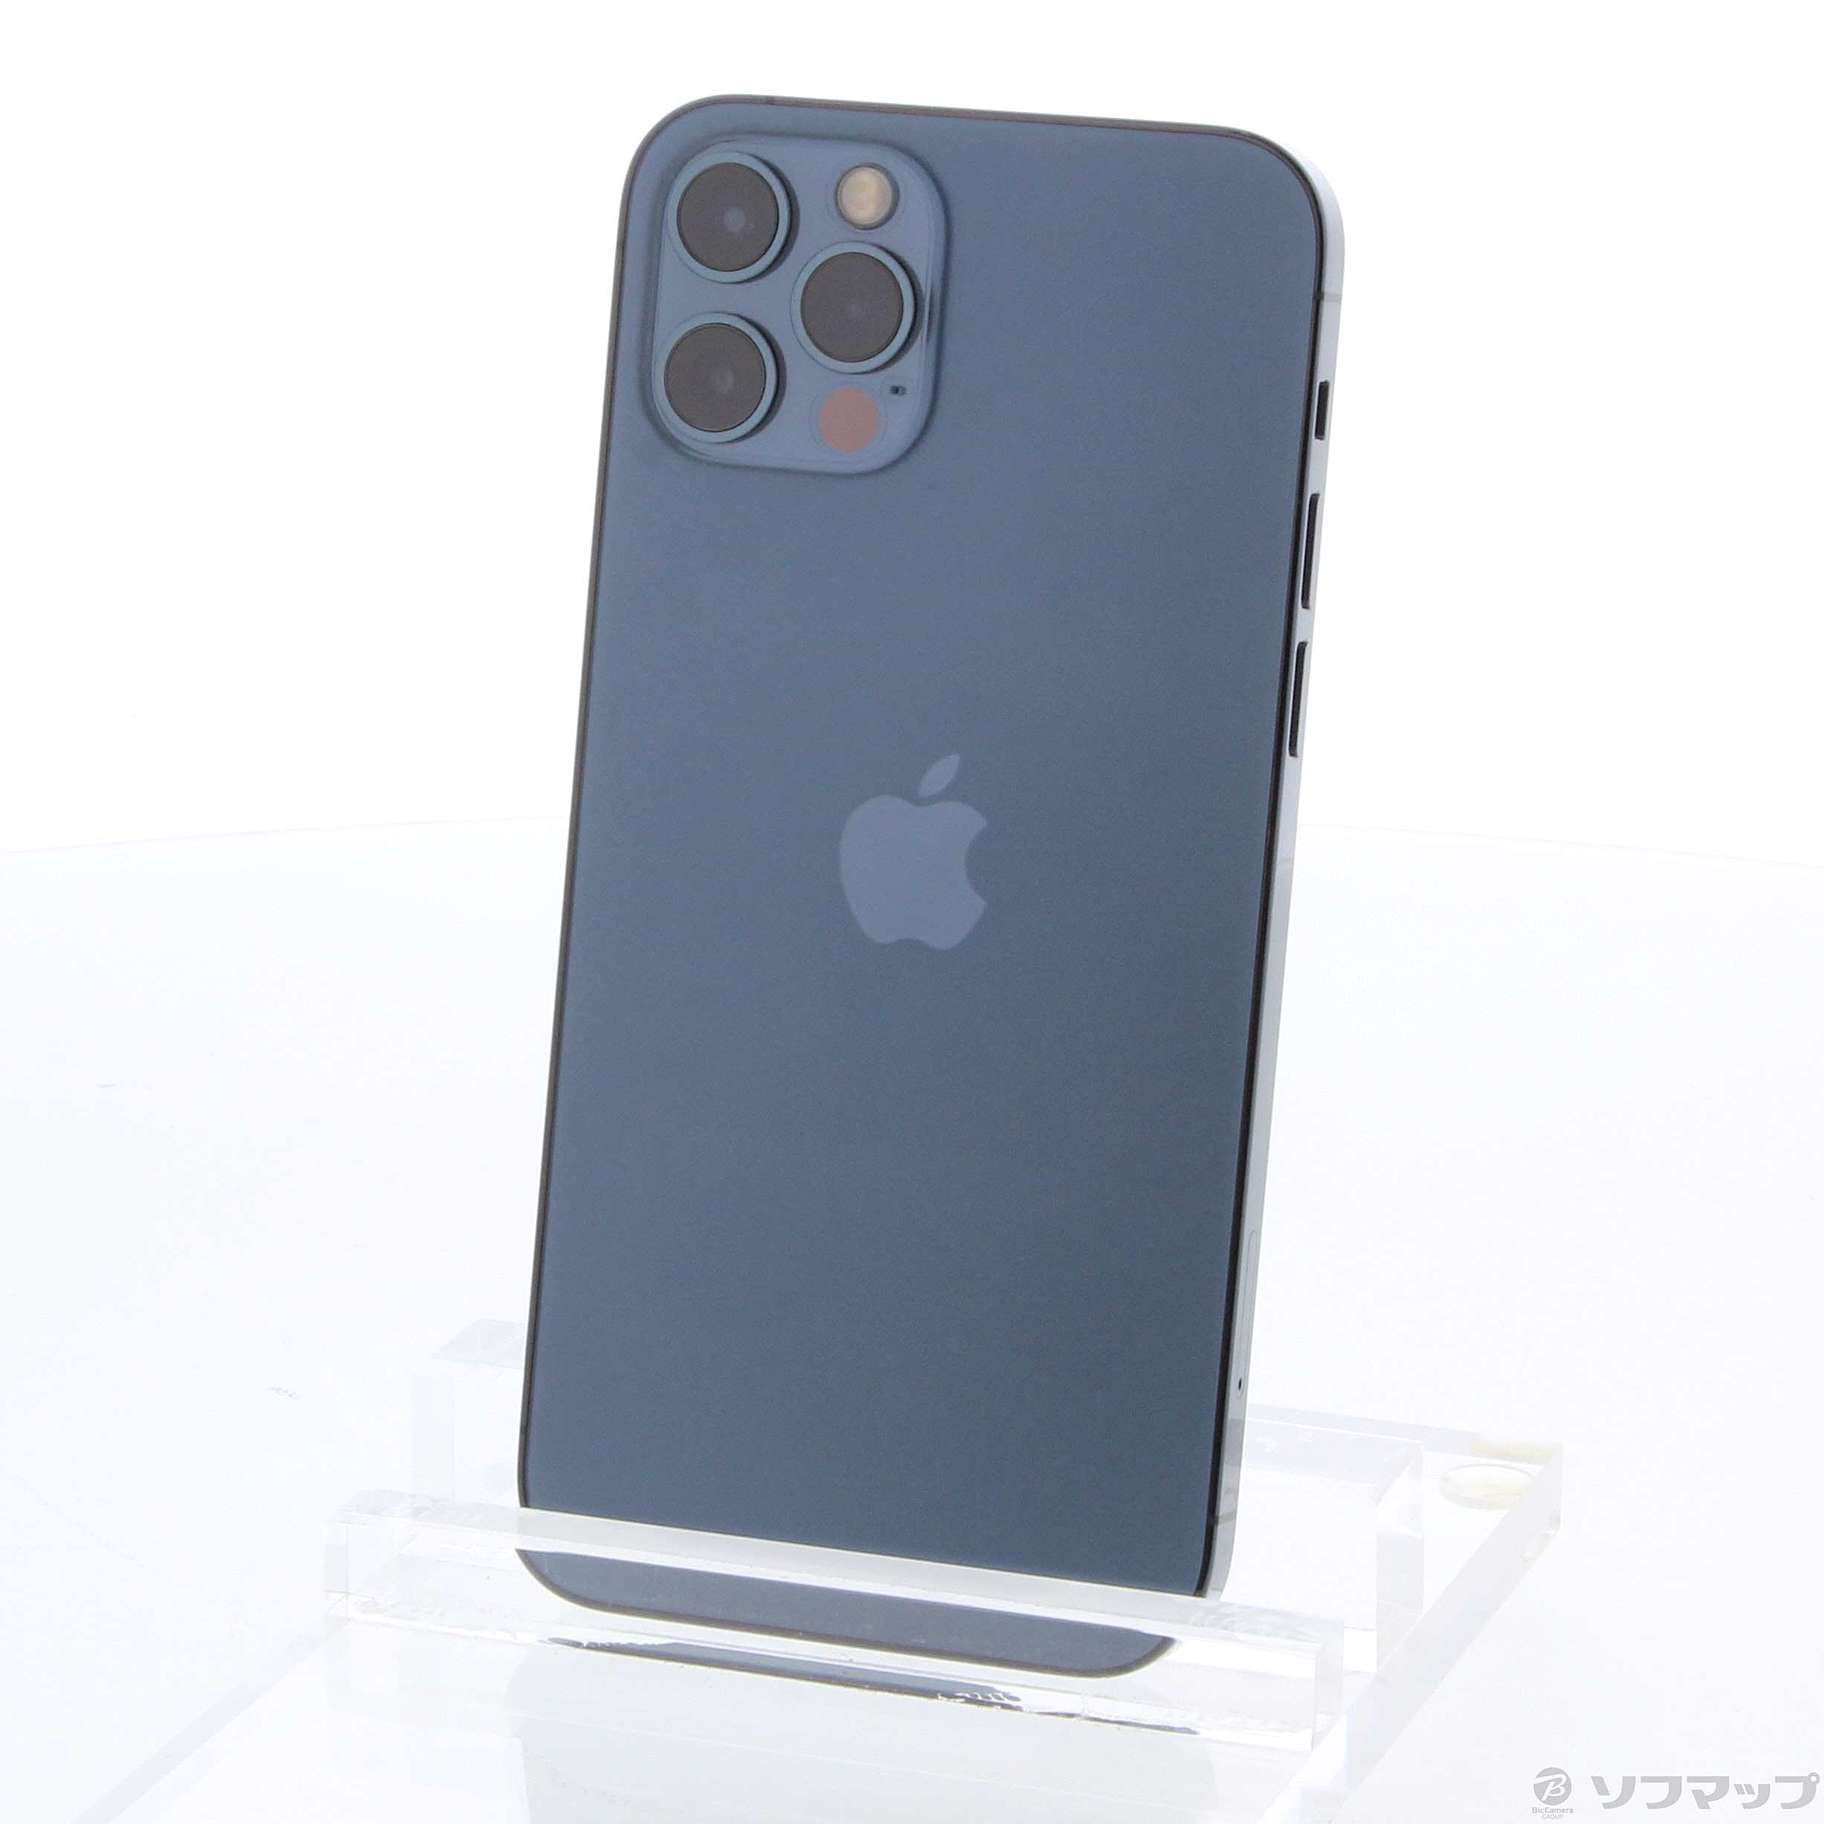 SIMフリー iPhone12 Pro 256GB  パシフィックブルー